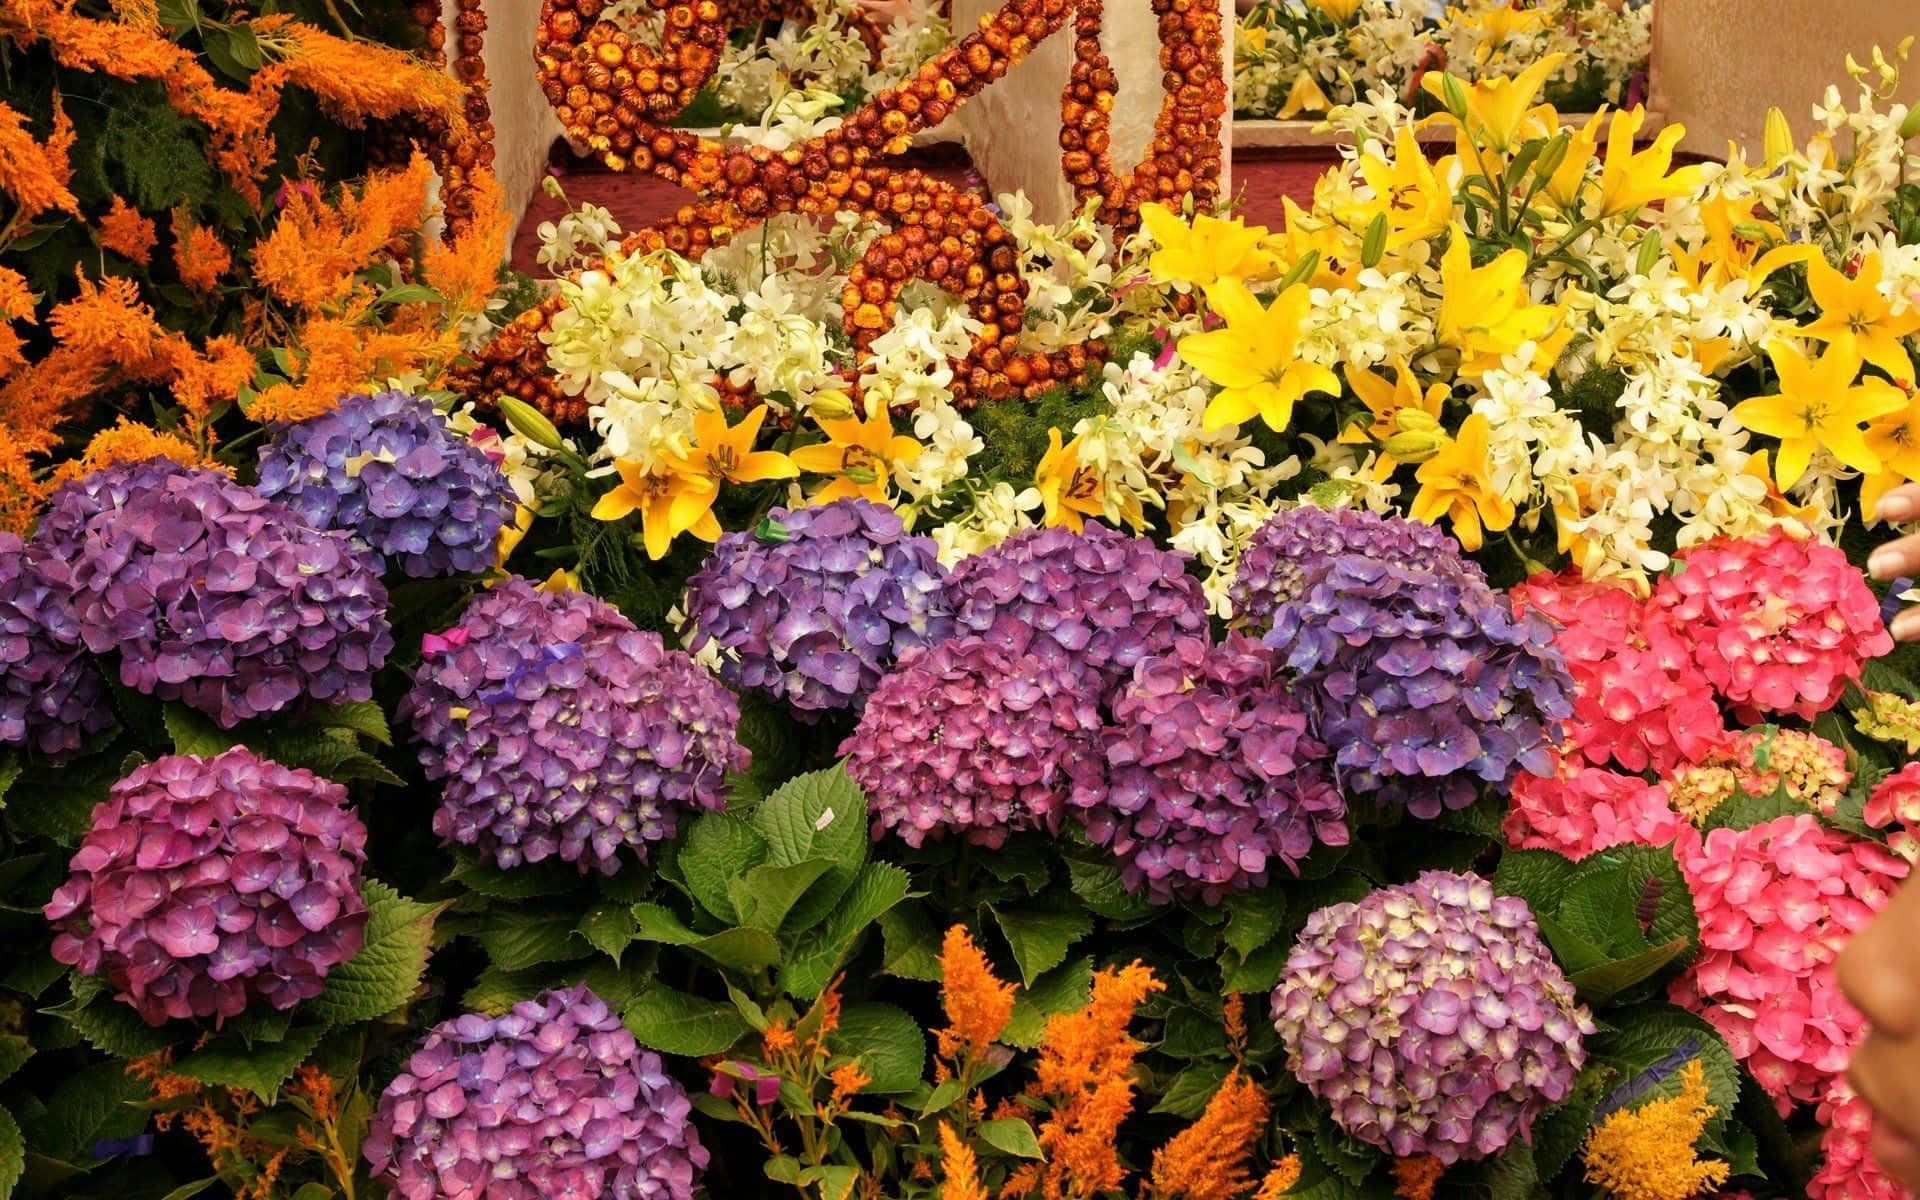 Unaanimada Tienda De Flores Llena De Arreglos Florales Frescos Y Coloridos Fondo de pantalla